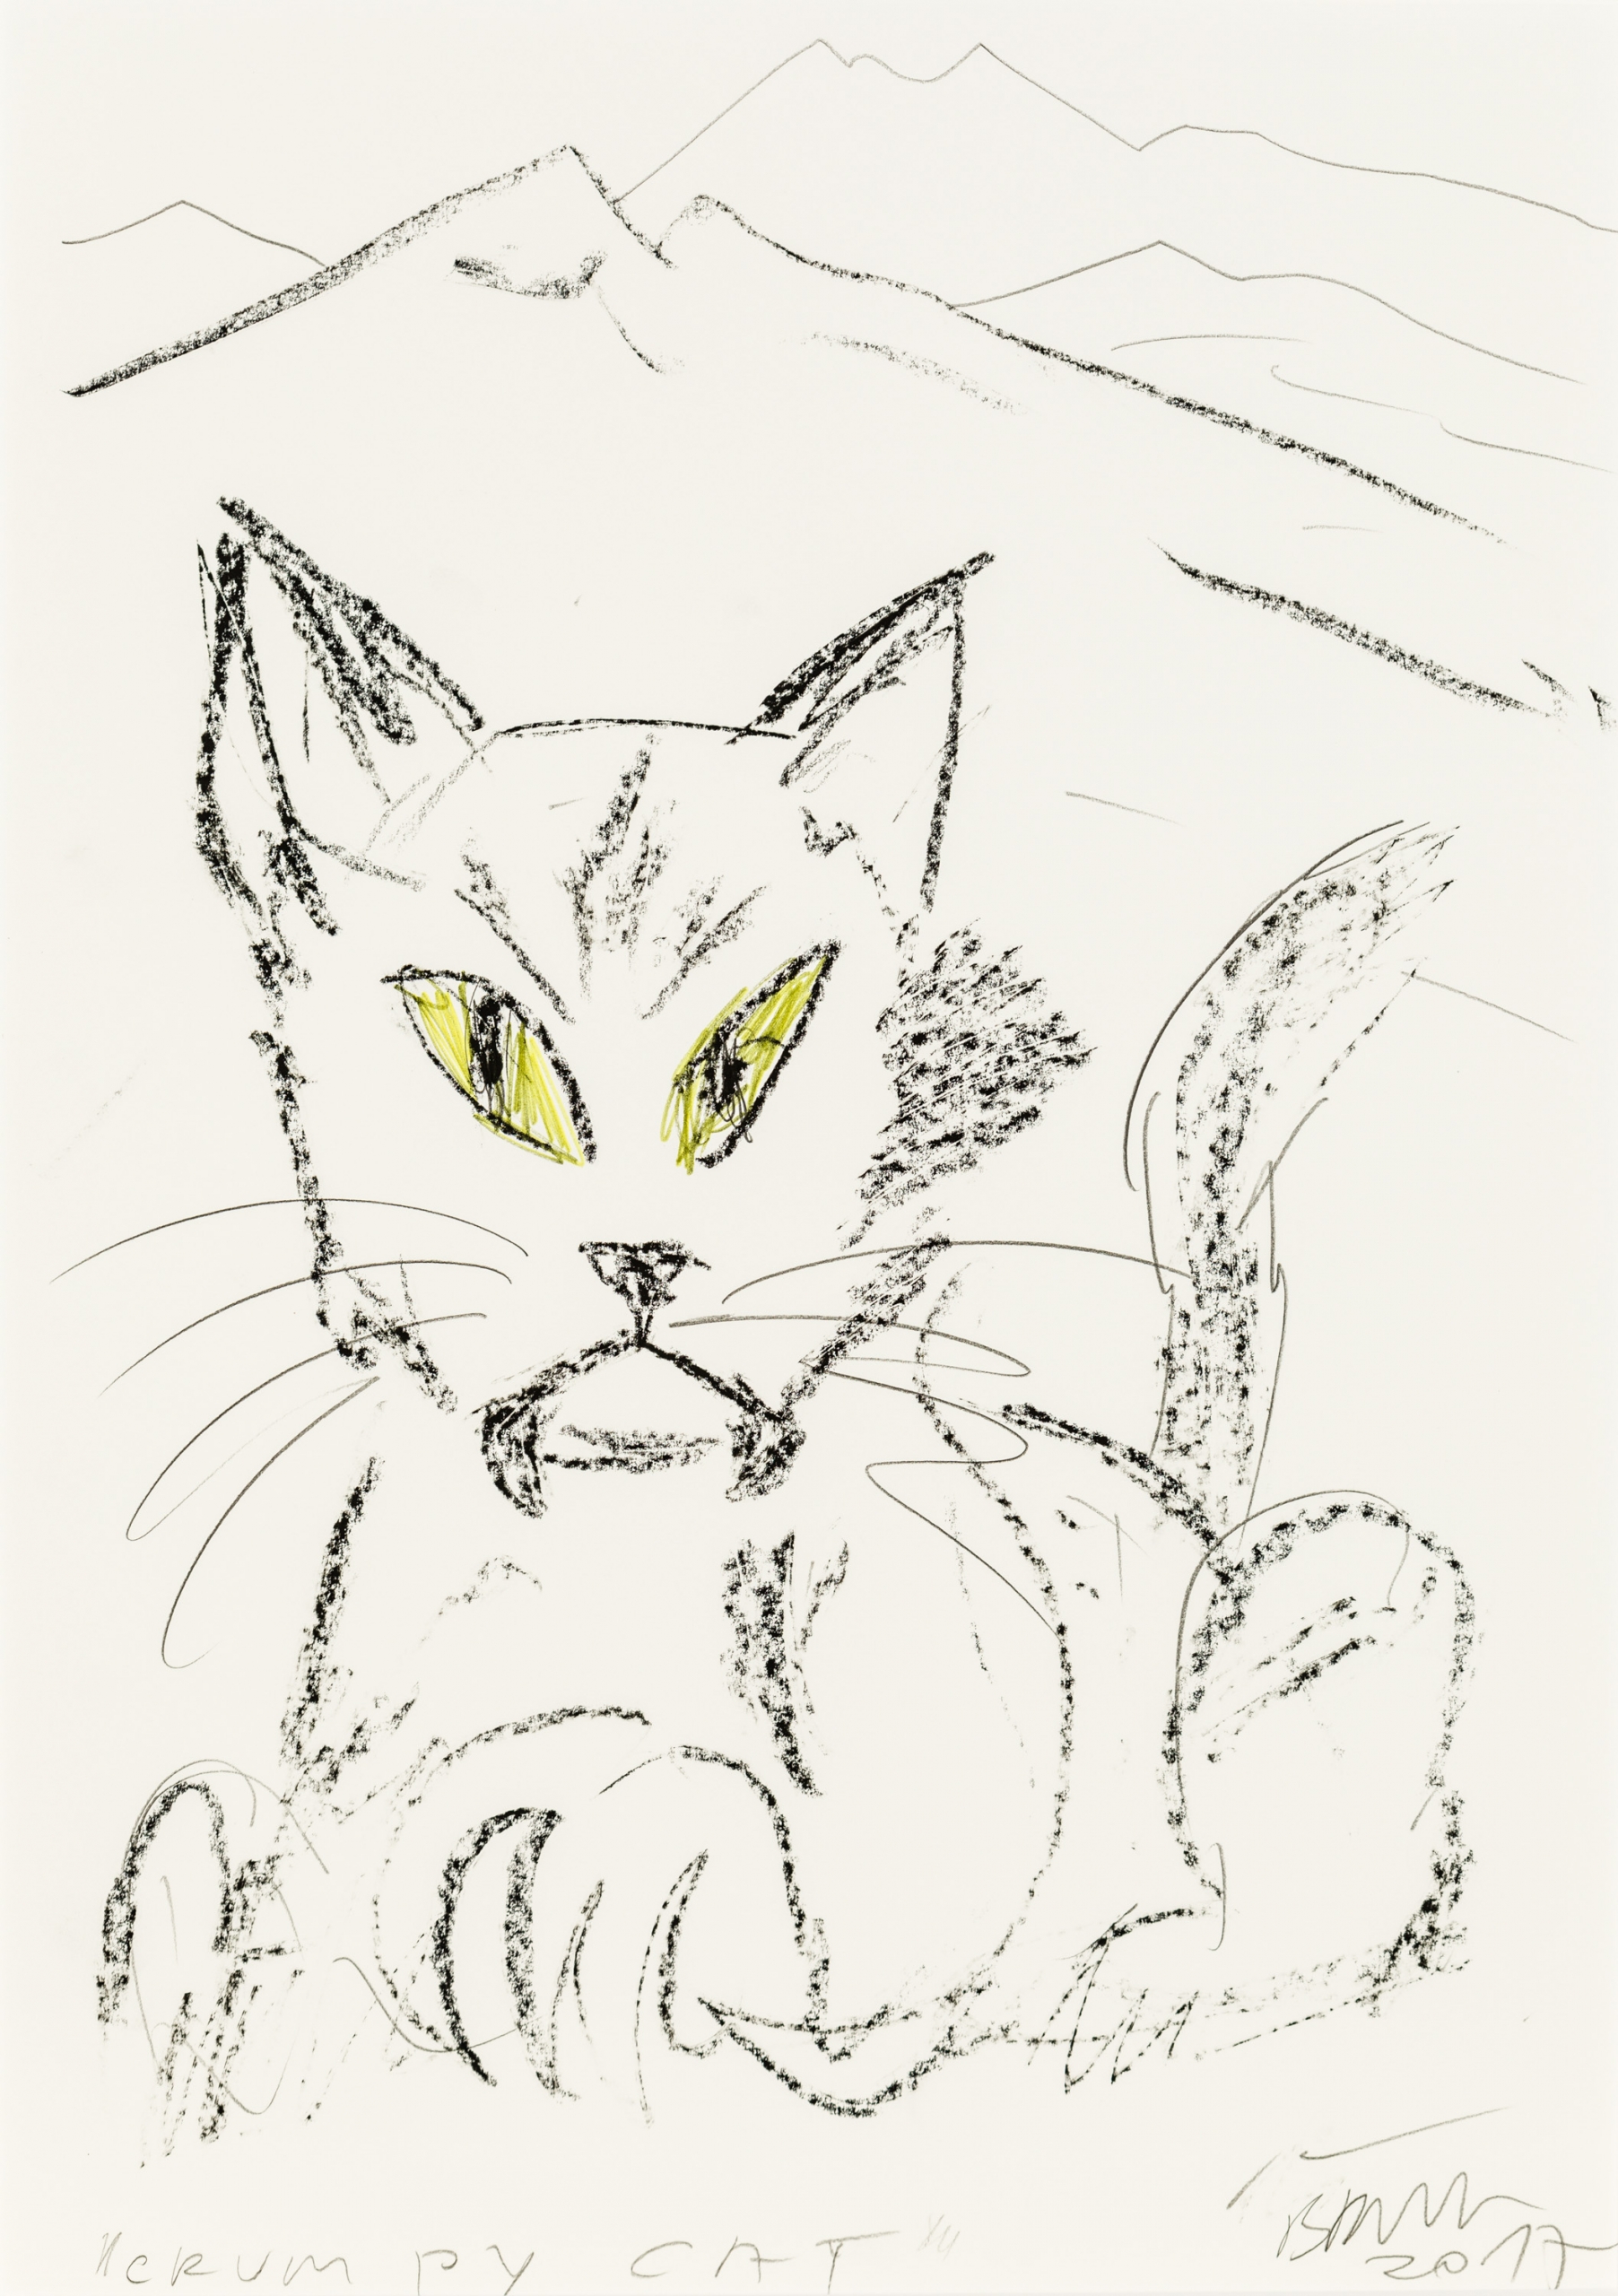 Herbert Brandl, Grumpy Cat